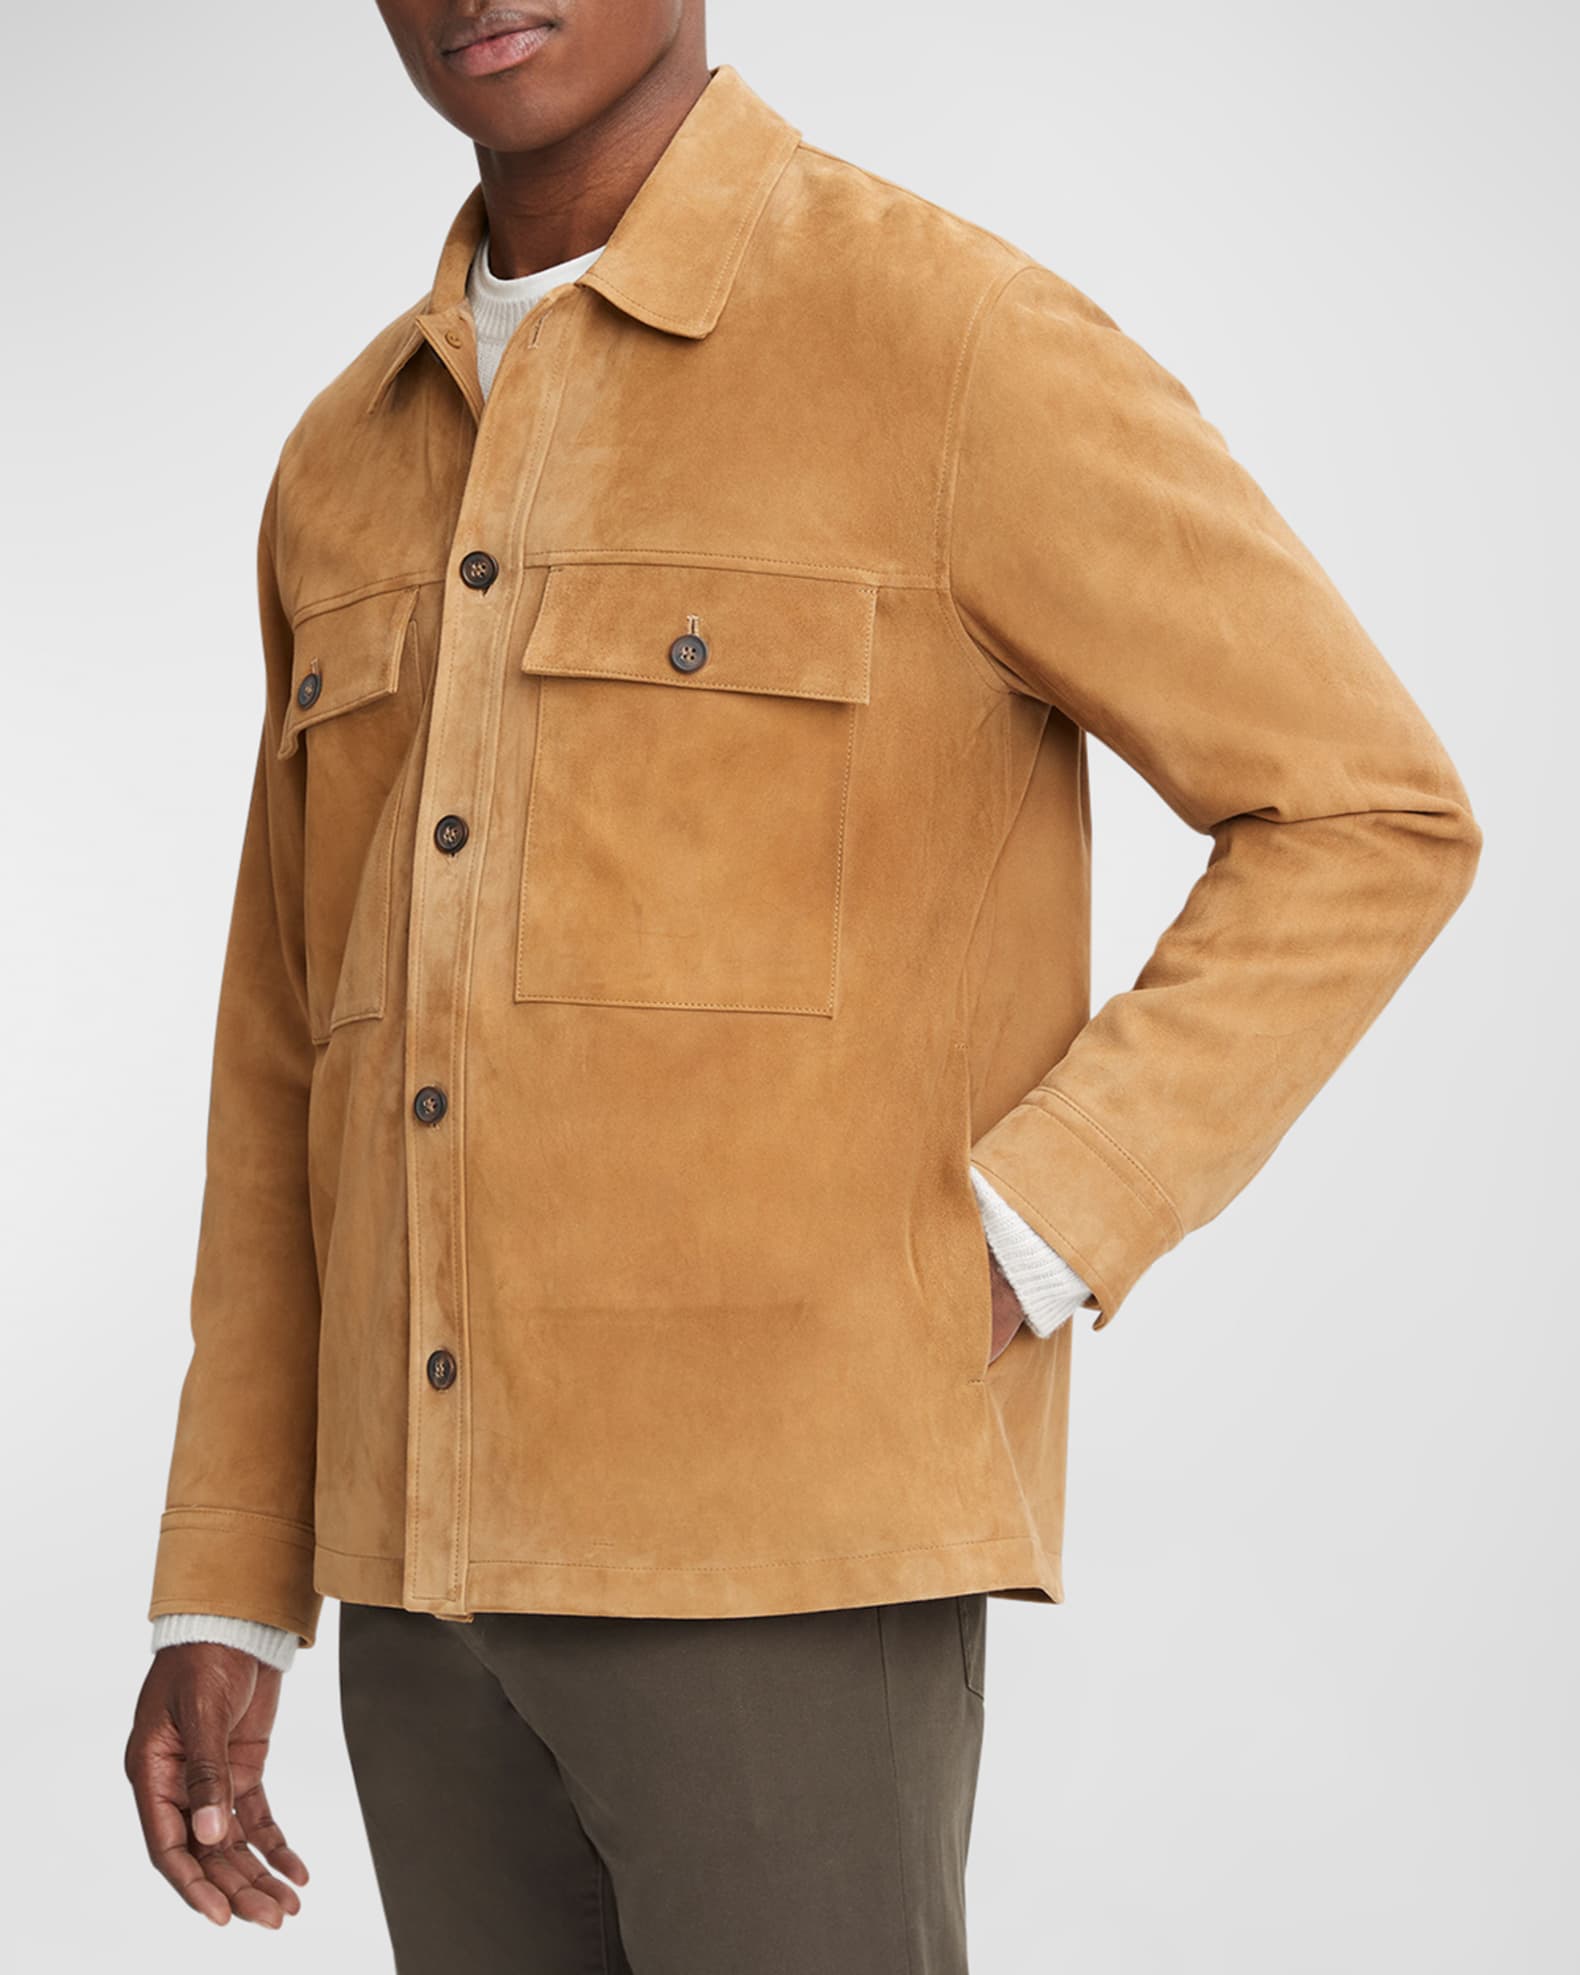 Louis Vuitton Men's Suede Trucker Jacket